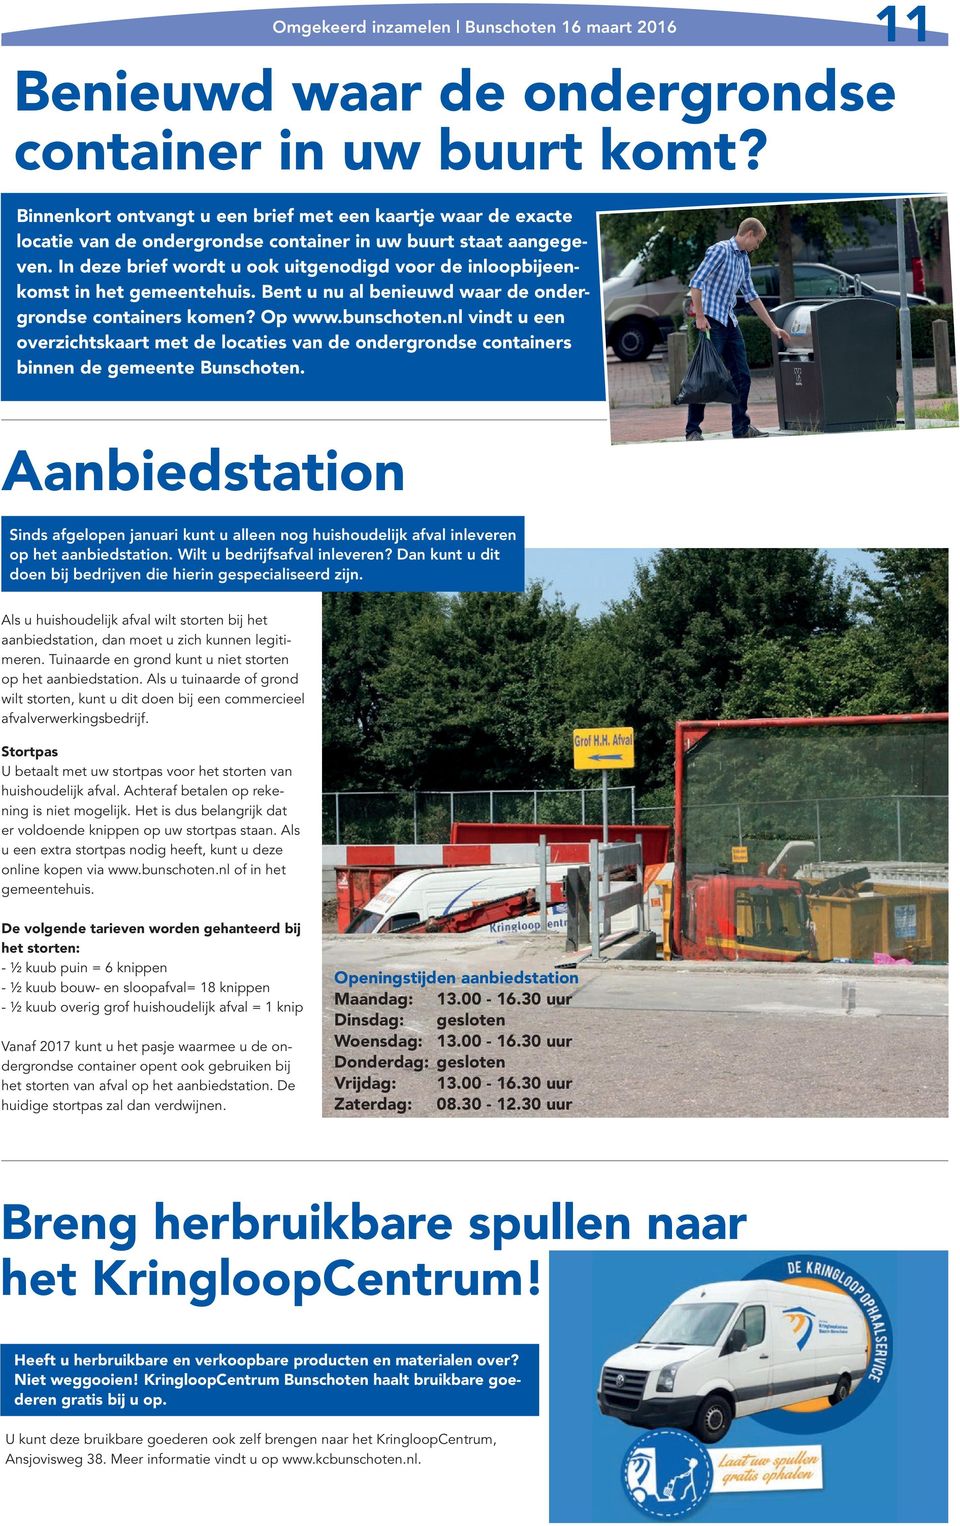 nl vindt u een overzichtskaart met de locaties van de ondergrondse containers binnen de gemeente Bunschoten.